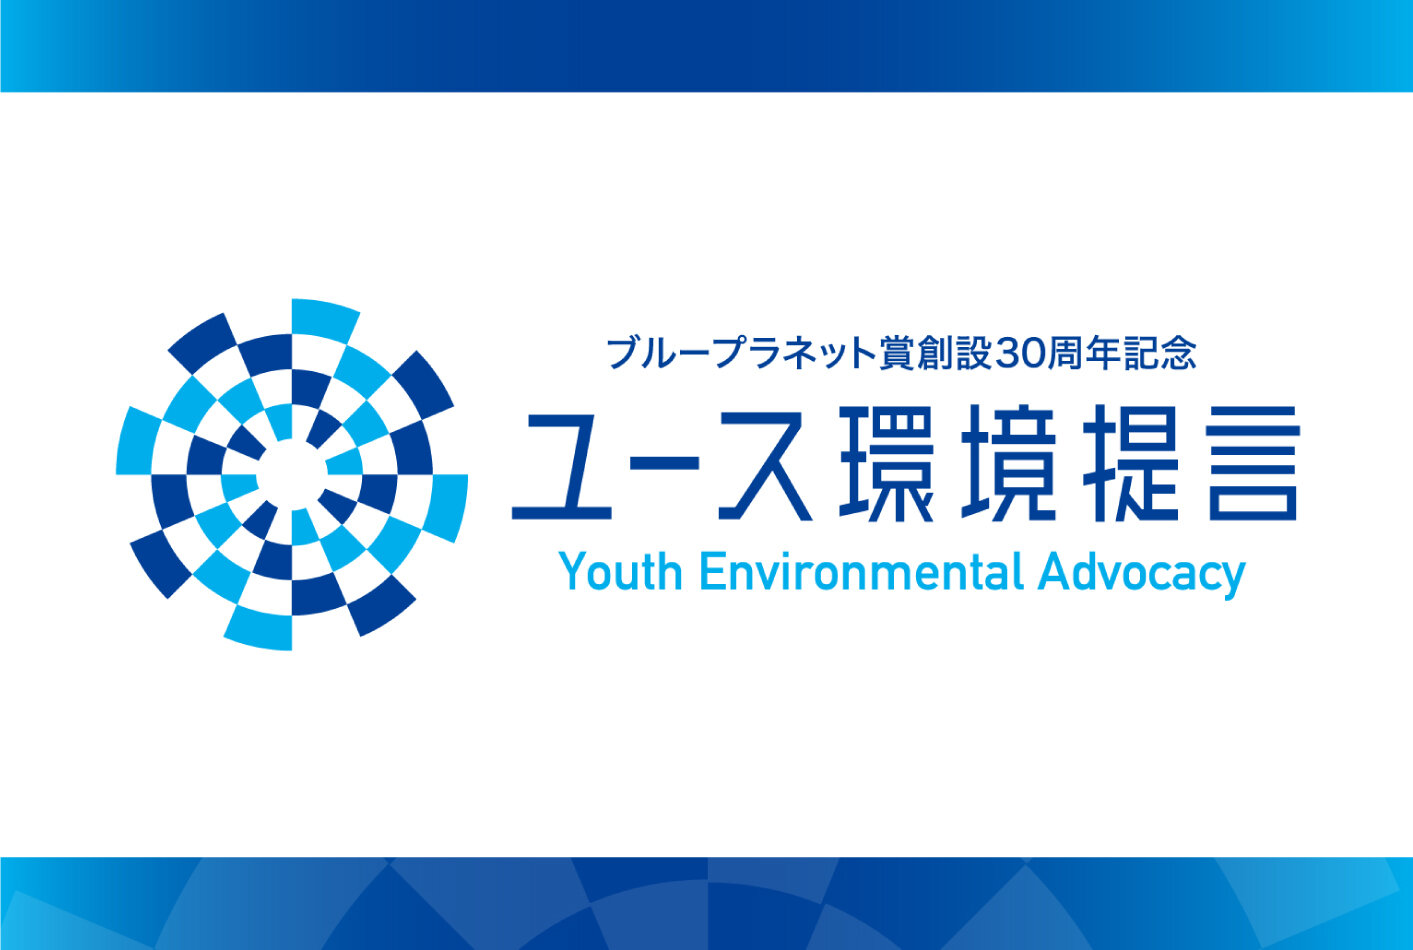  ユース環境提言プロジェクトスタート（8月25日シンポジウム開催予定）